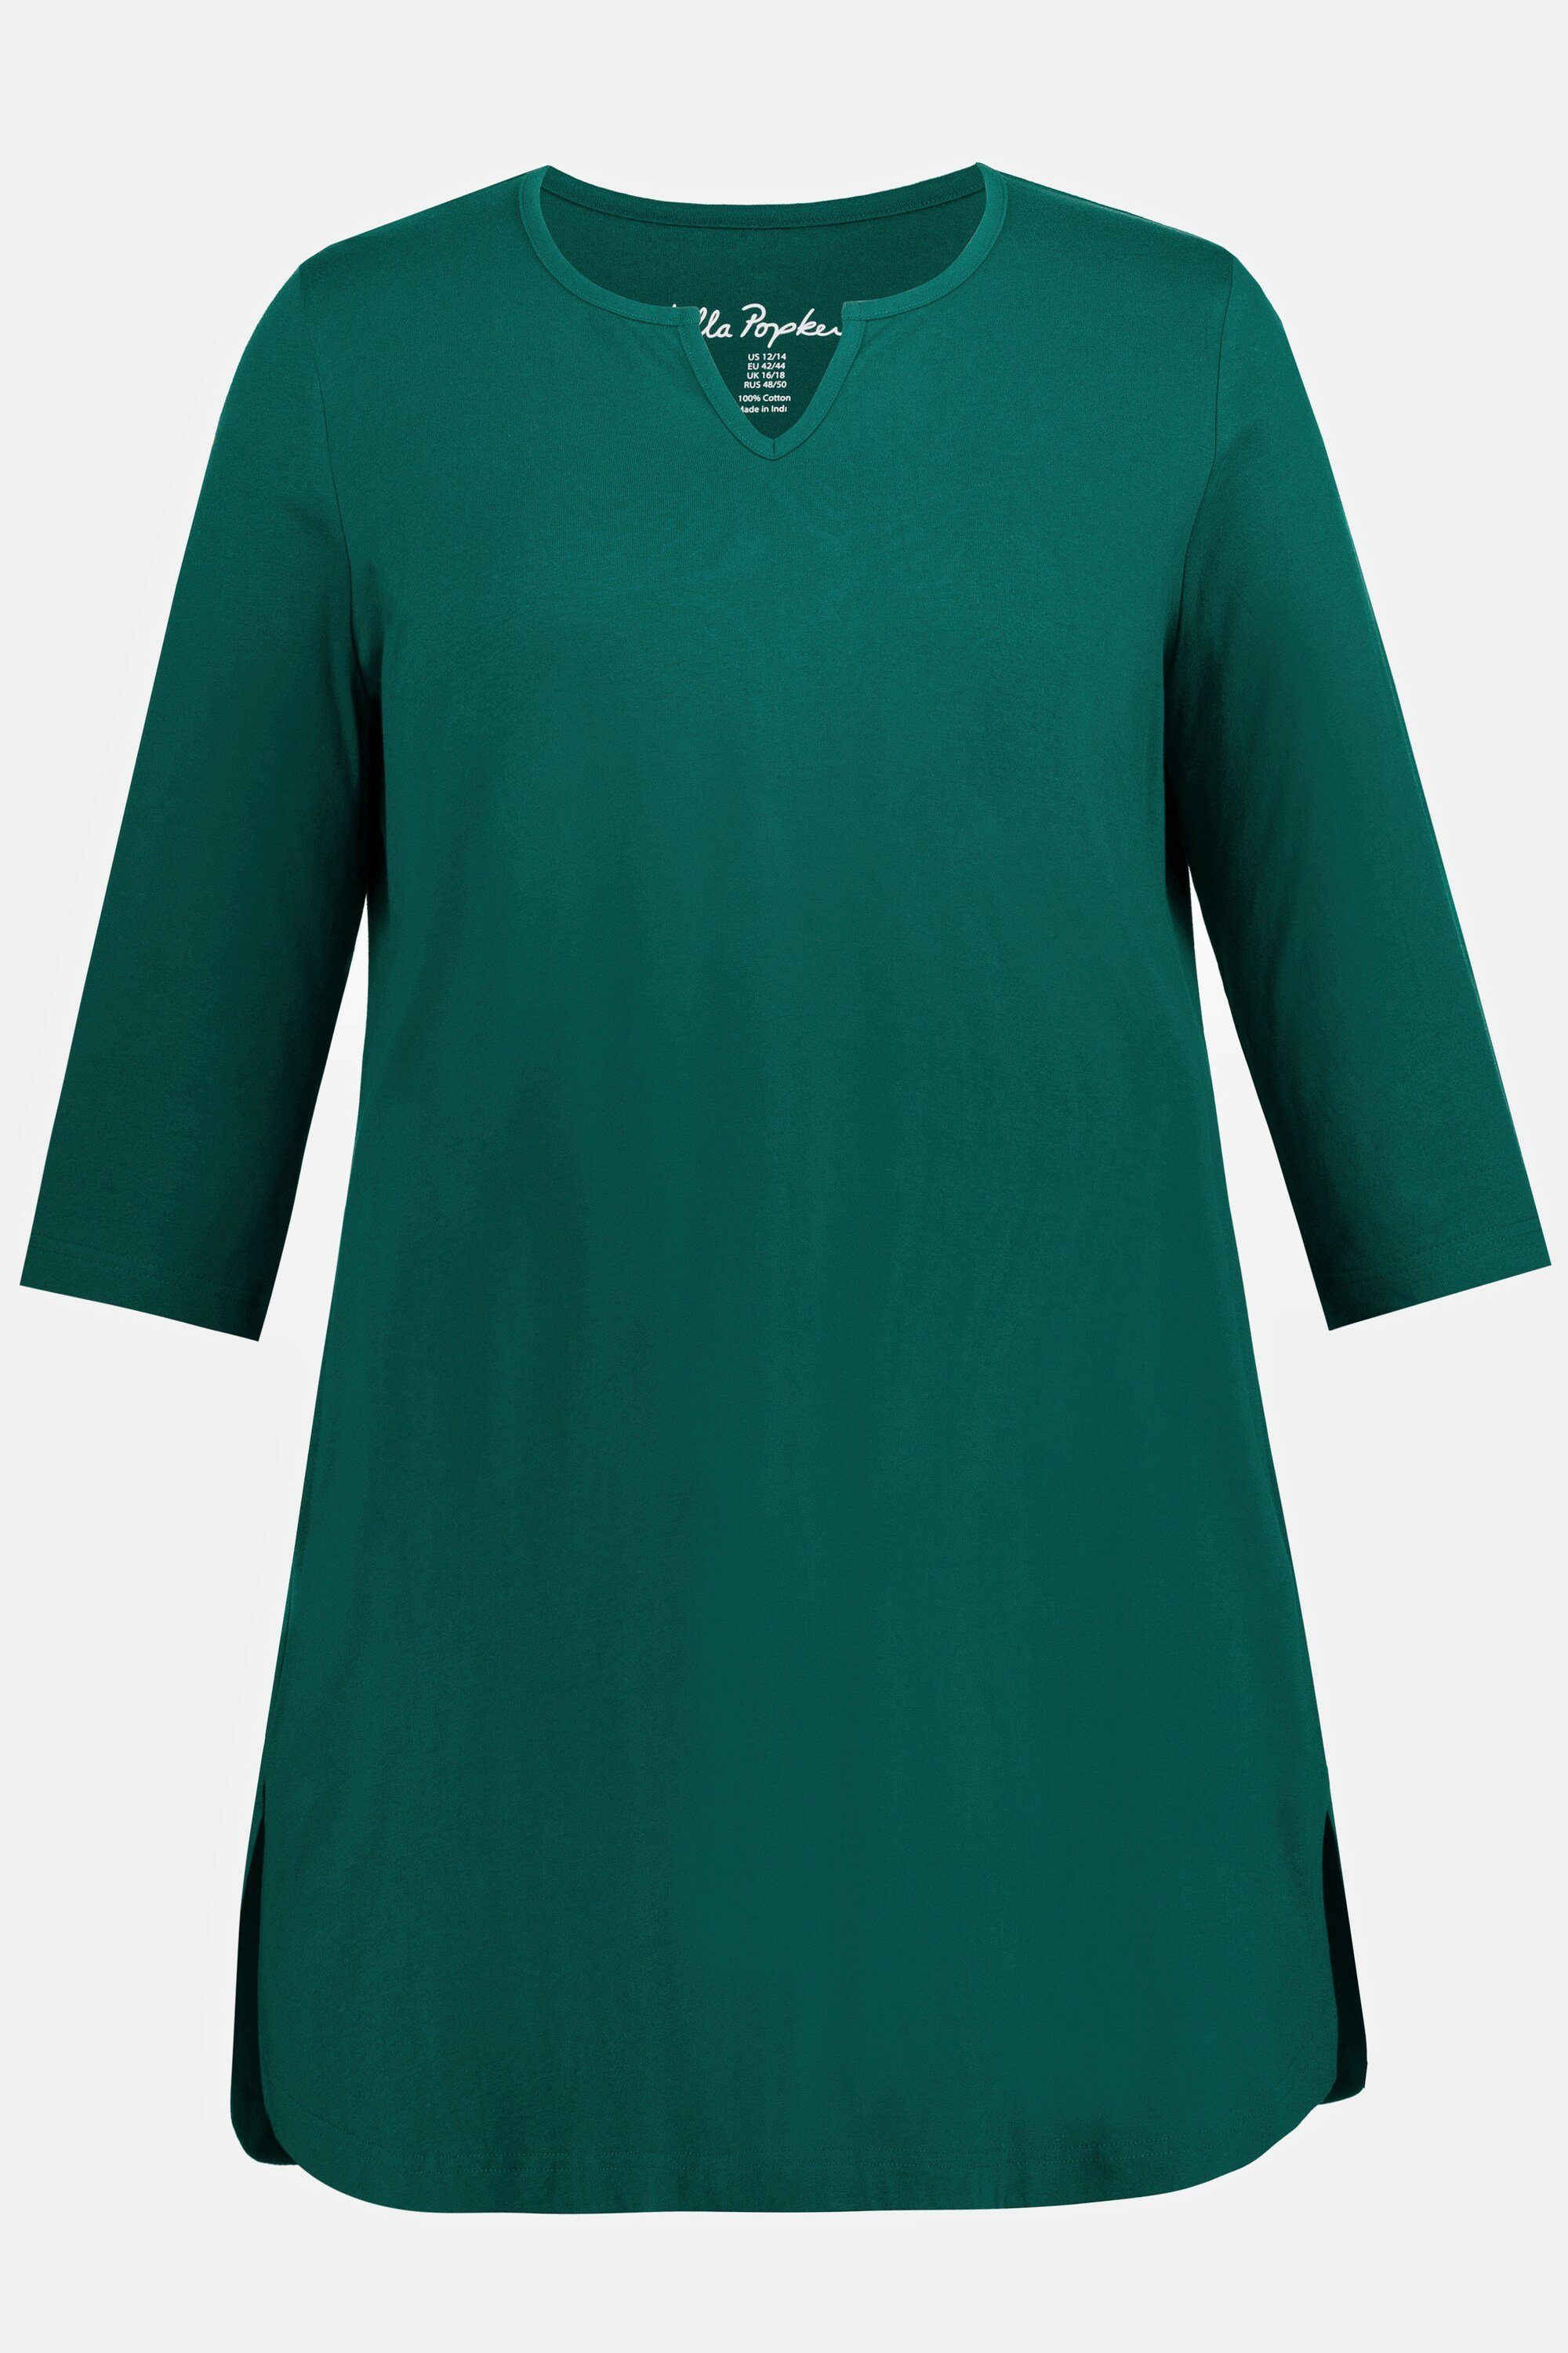 grün 3/4-Arm Taschen Ulla Popken Longshirt Tunika-Ausschnitt Longshirt